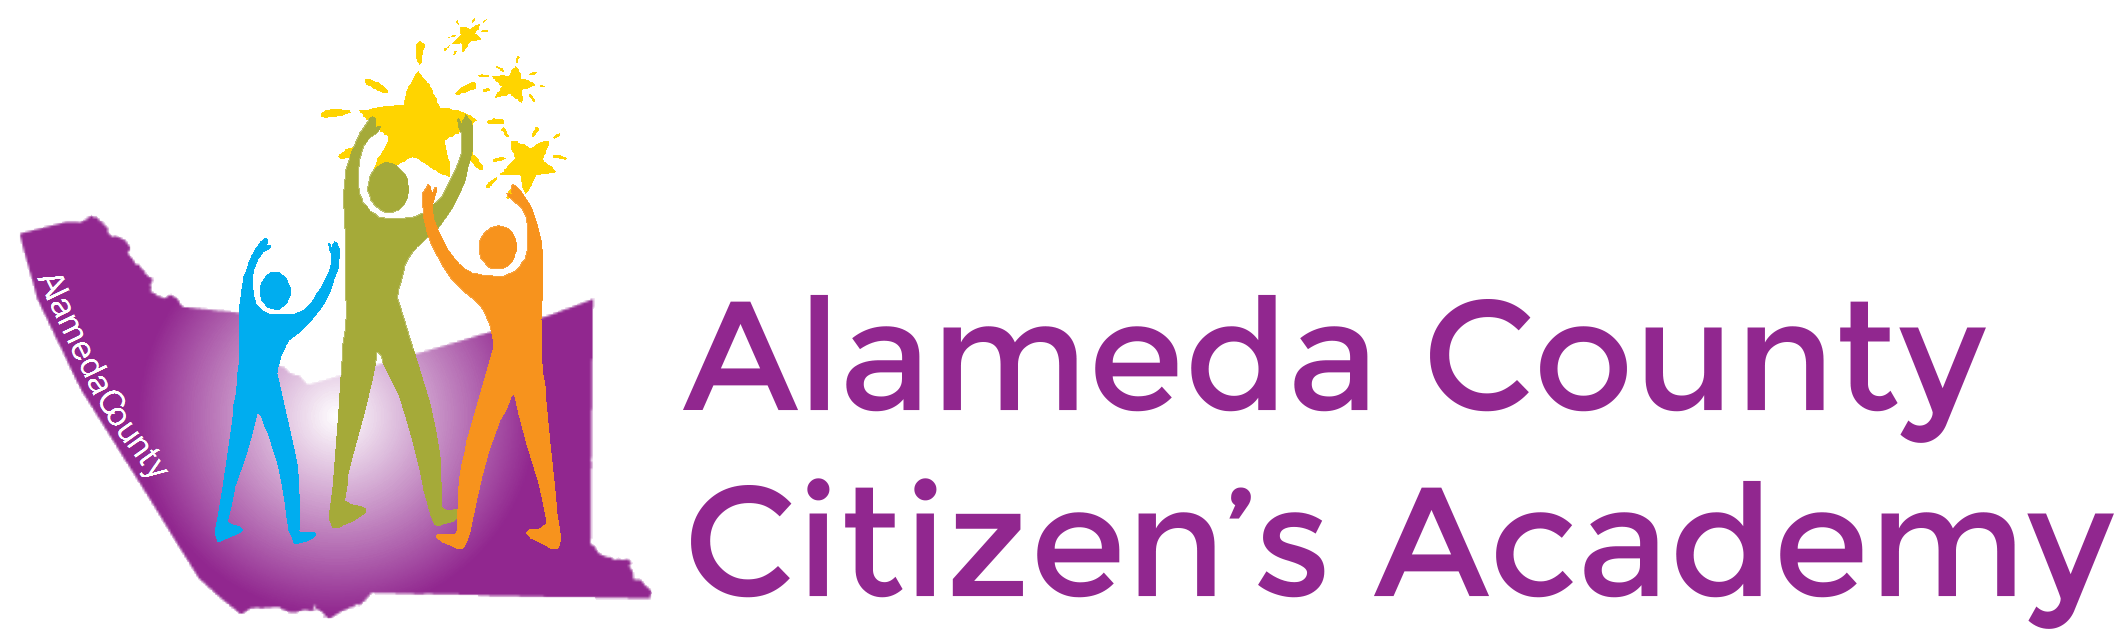 Alameda County Citizen's Academy logo